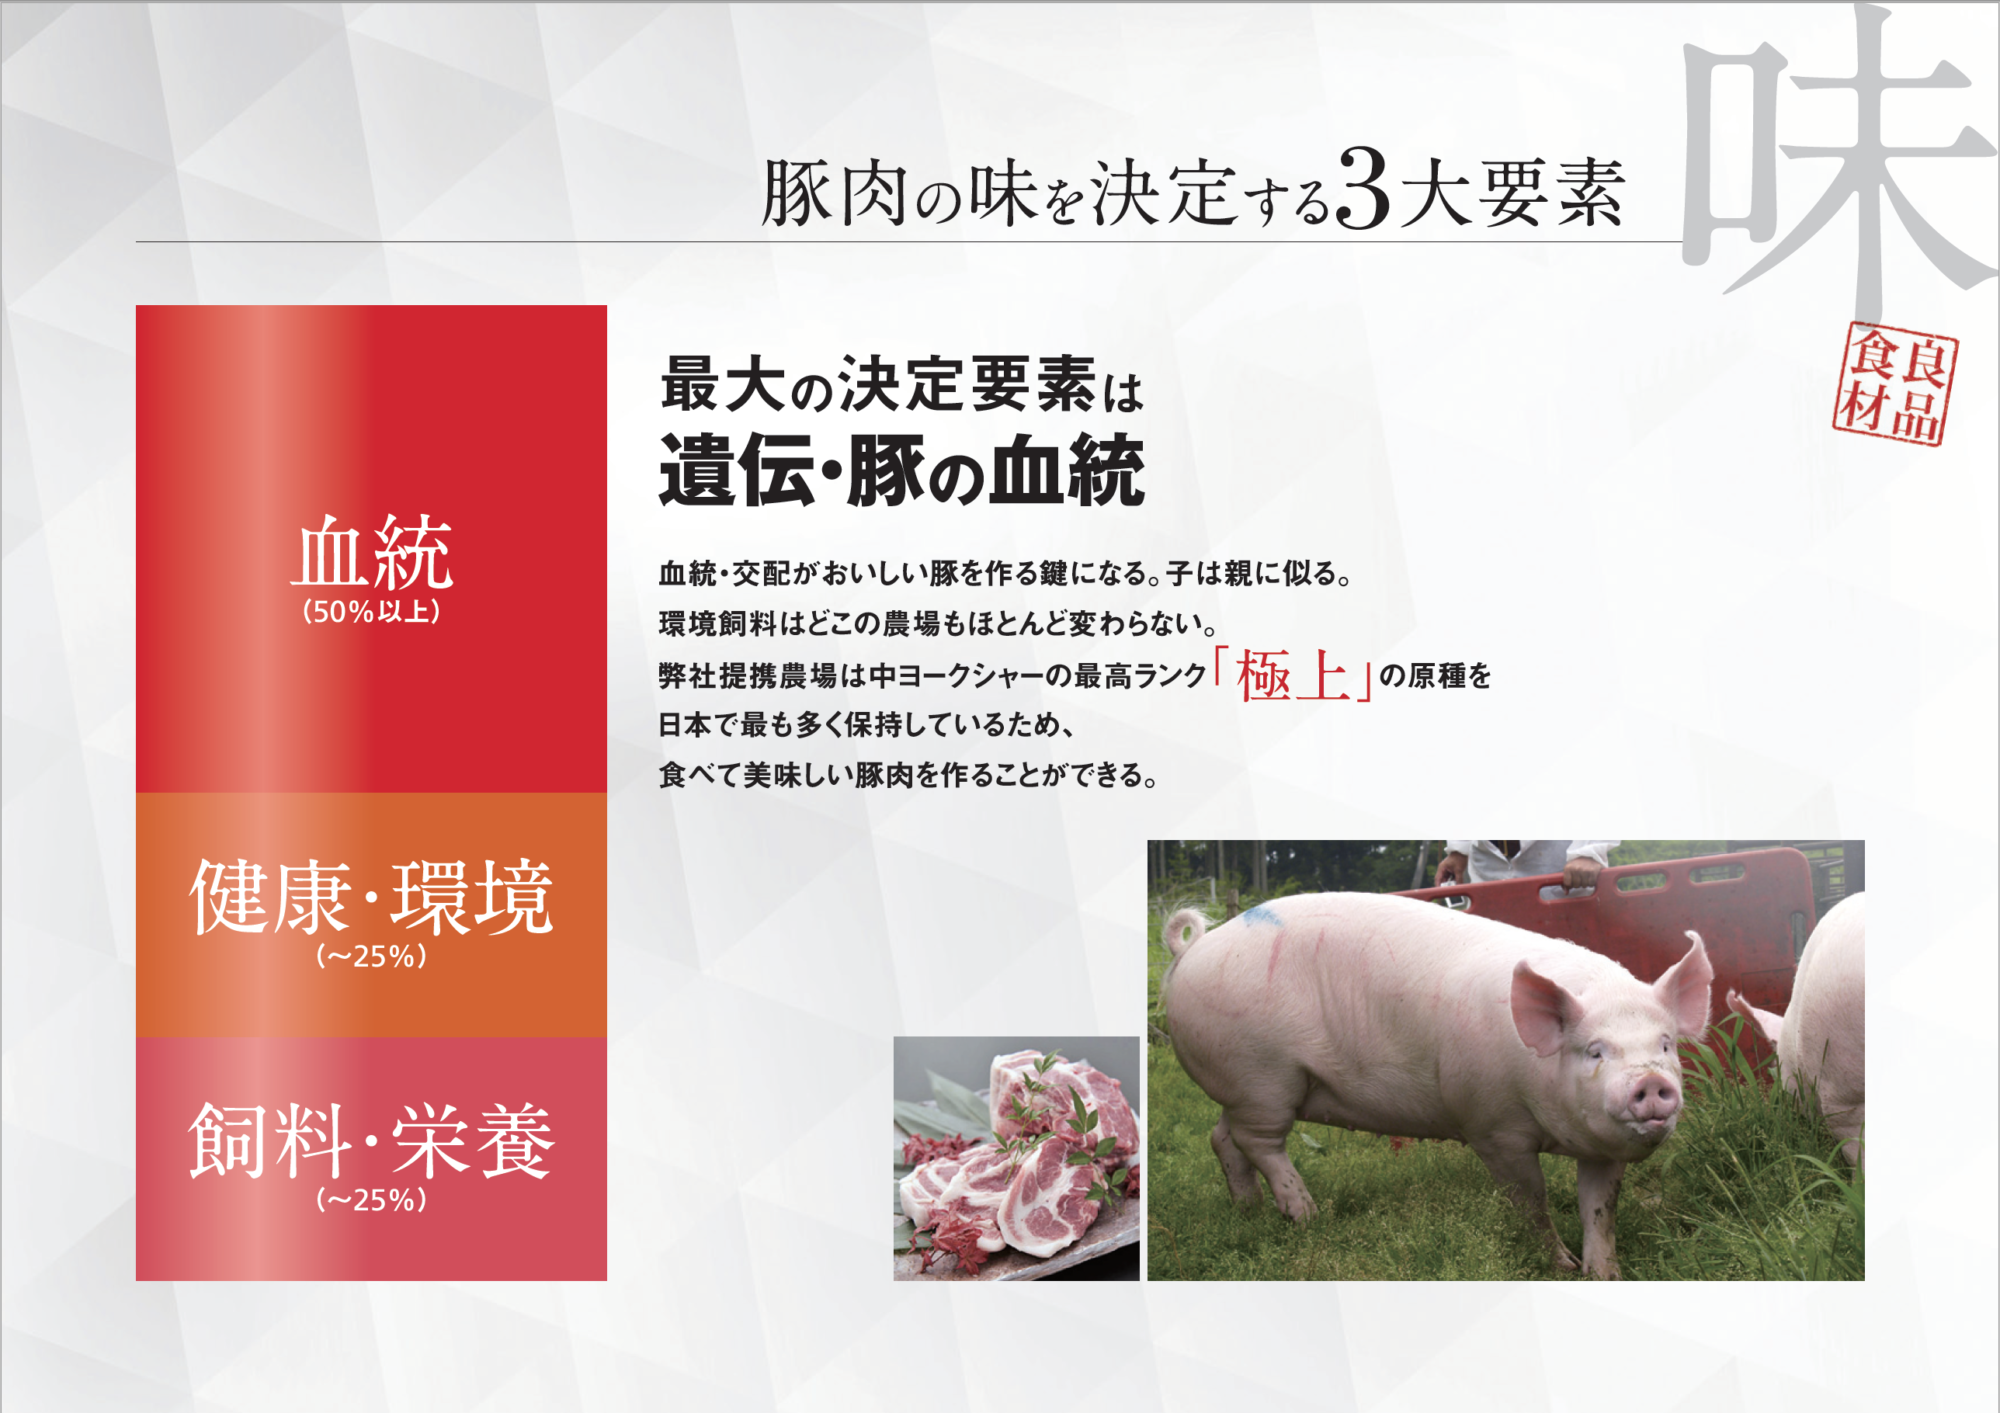 富士幻豚の品種について 富士幻豚 ふじげんとん 公式webサイト